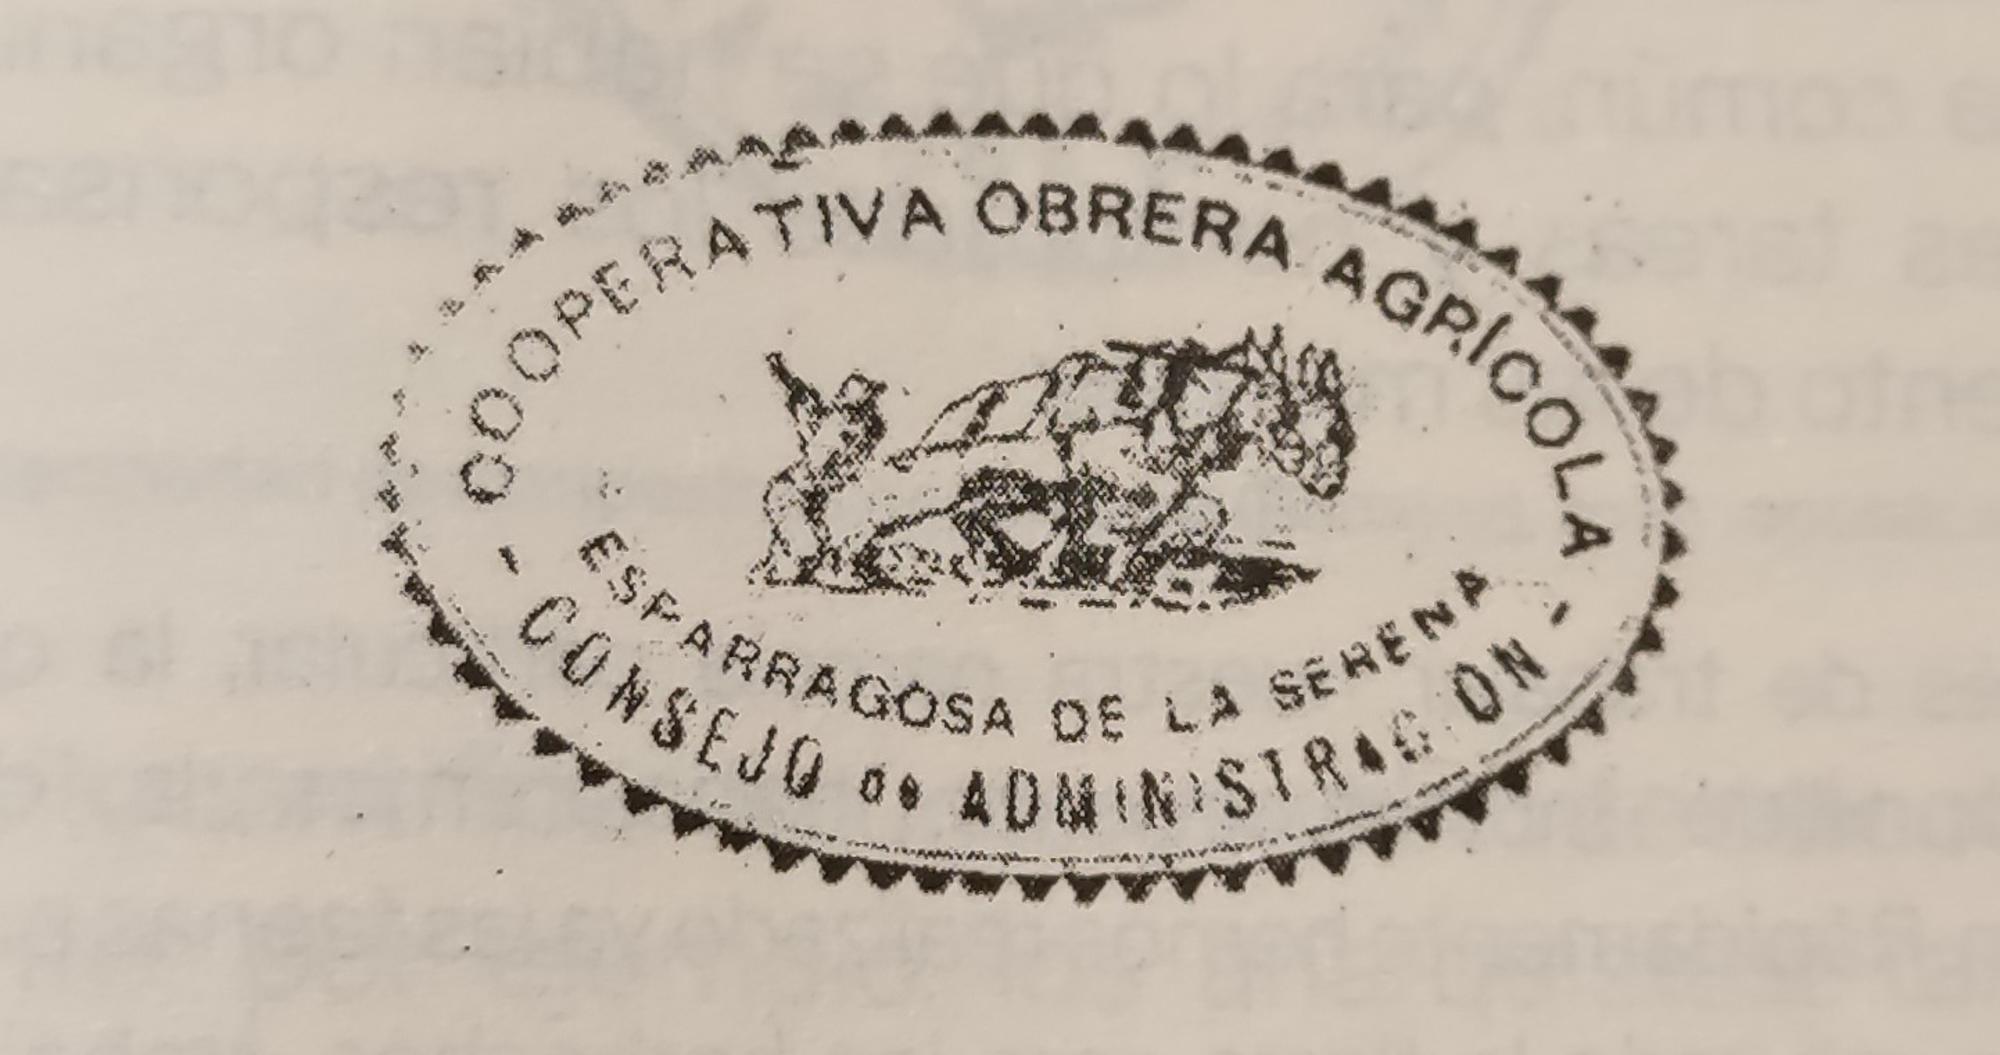 Cooperativa Obrera Agrícola Extremadura